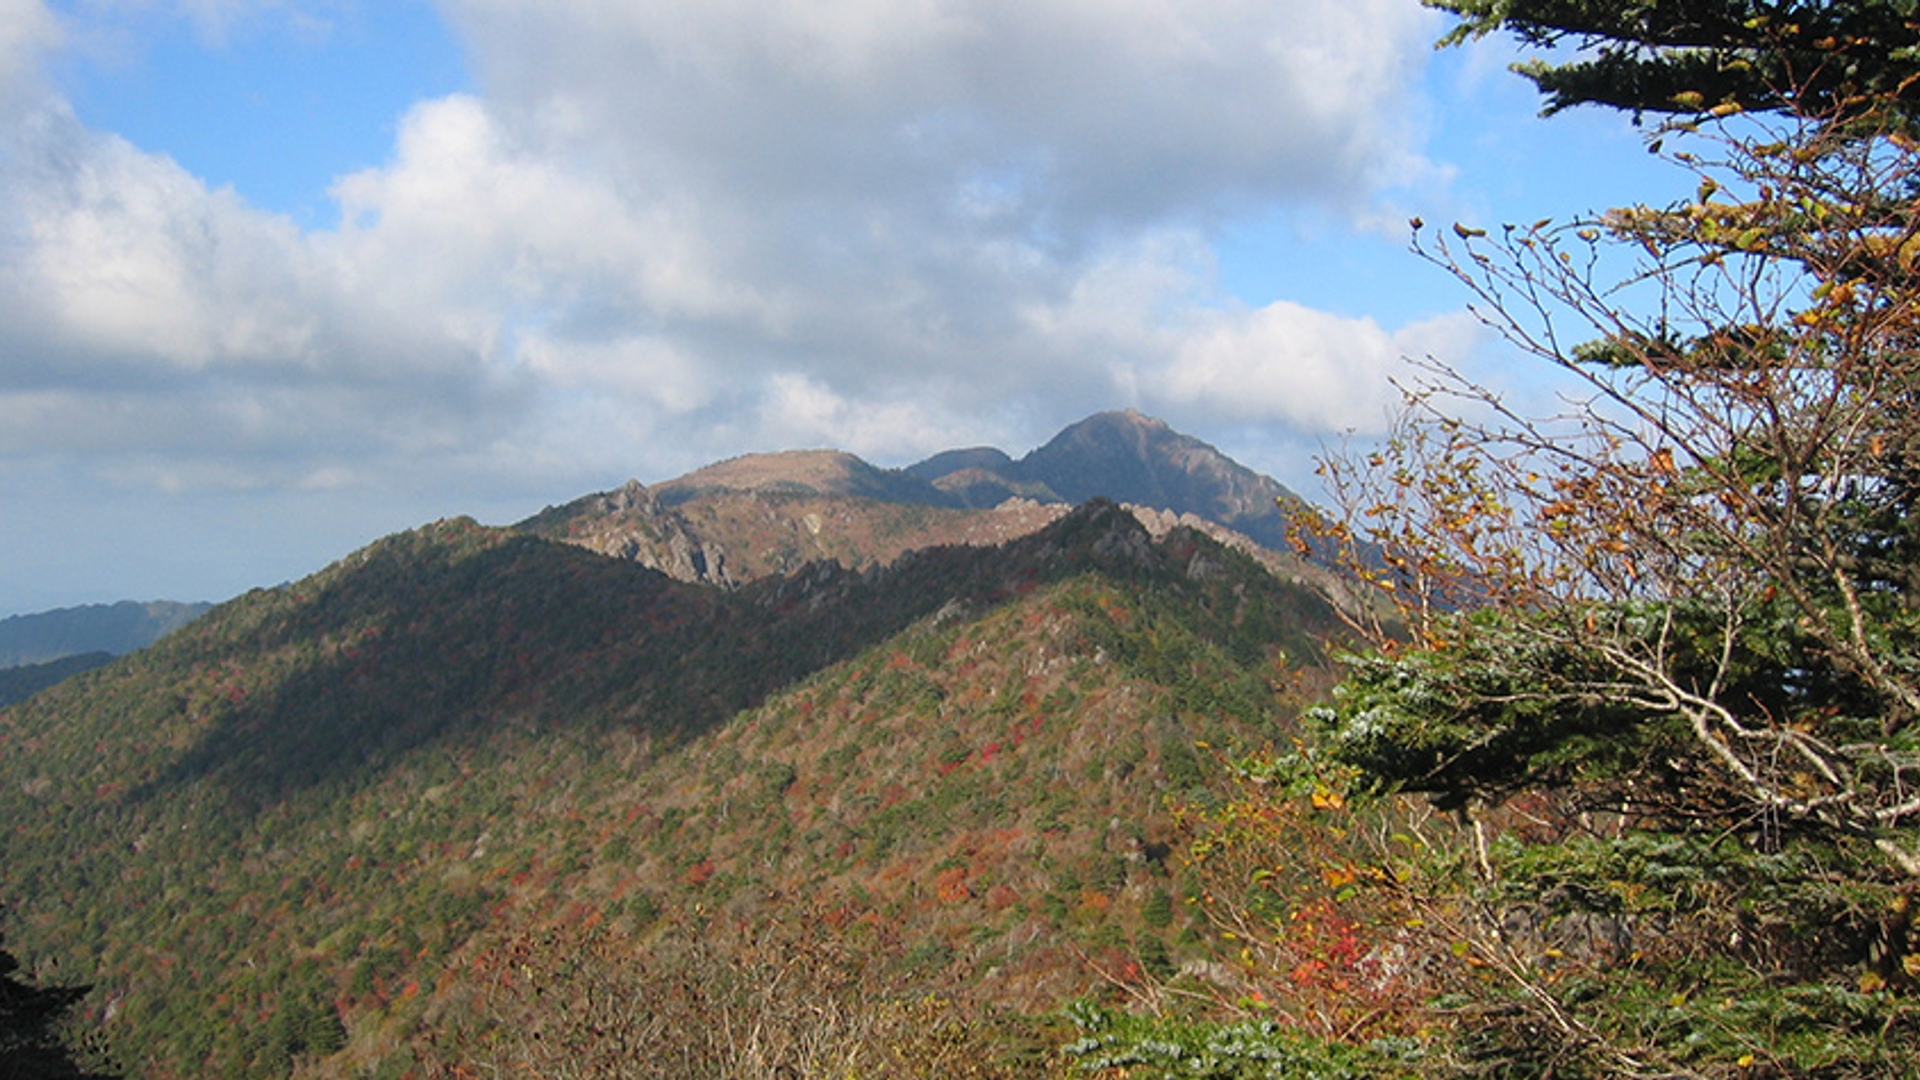 Mount Jiri Jirisian